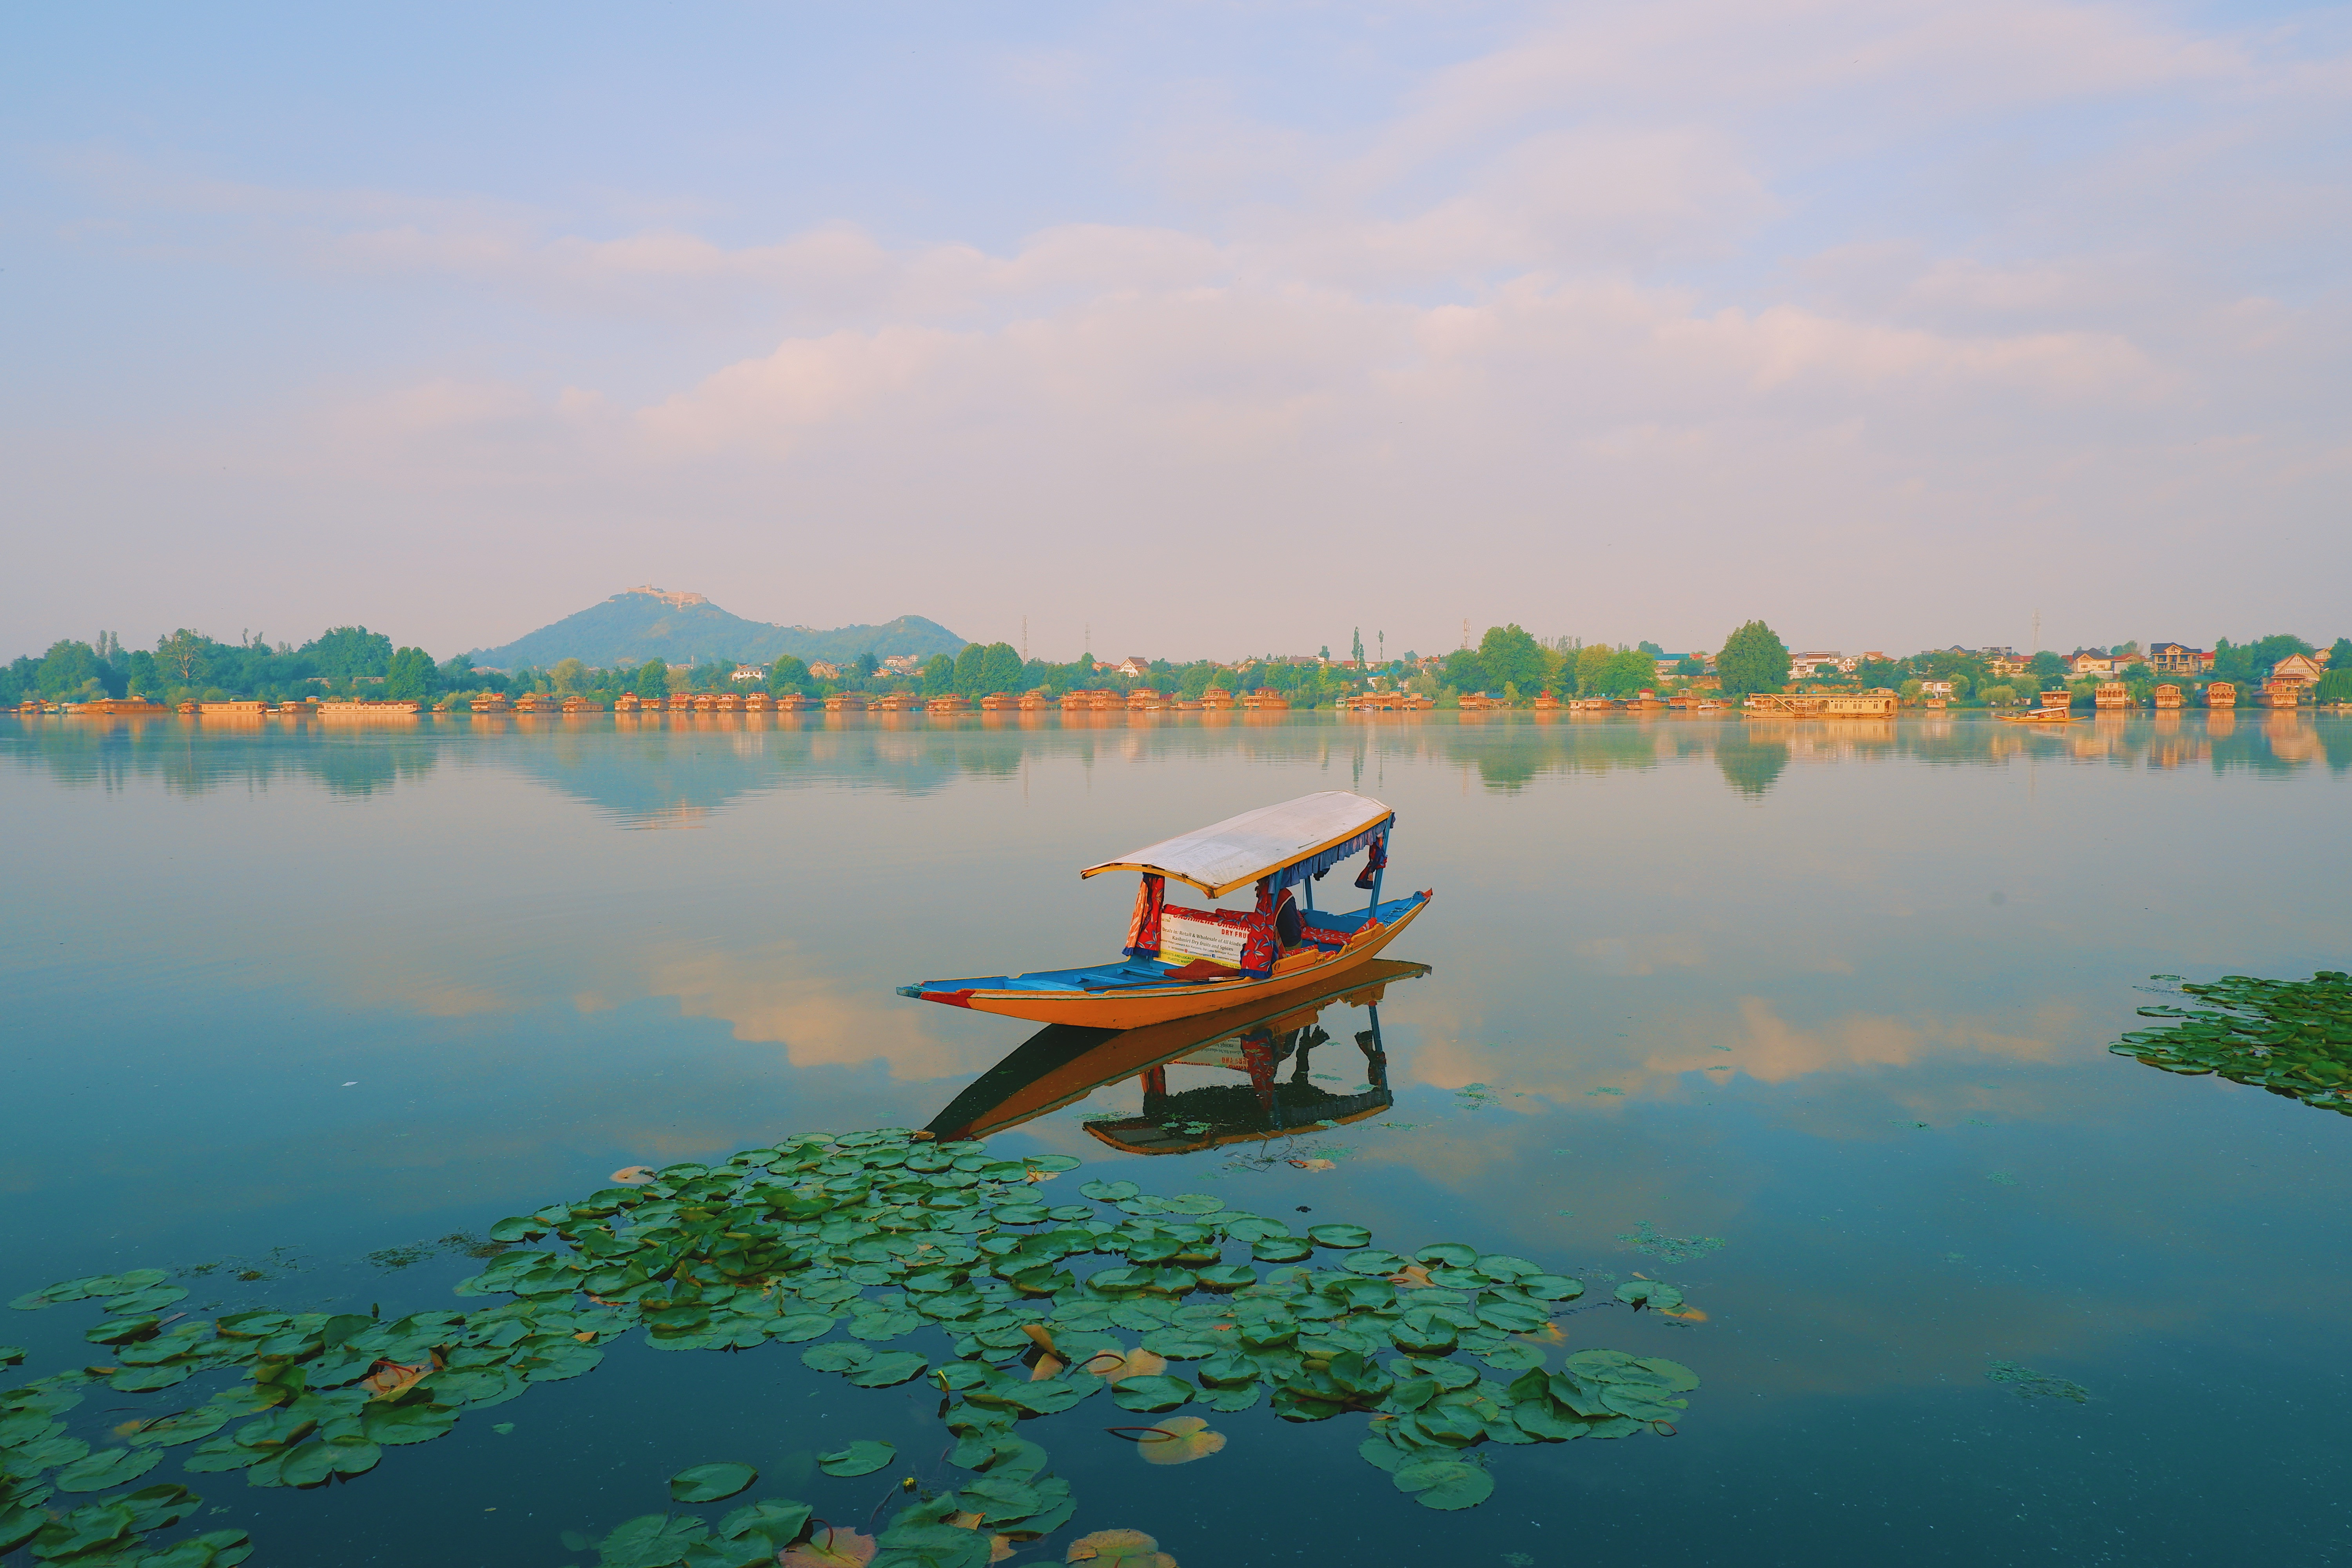 Hồ Nigeen hồ nước lớn thứ 2 của Srinagar sau hồ Dal. Xa xa gần gần là các house boat, ở Srinagar rất phát triển dịch vụ nhà thuyền. Ngắm bình minh trên thuyền buổi sớm là một trải nghiệm vô cùng dễ chịu.